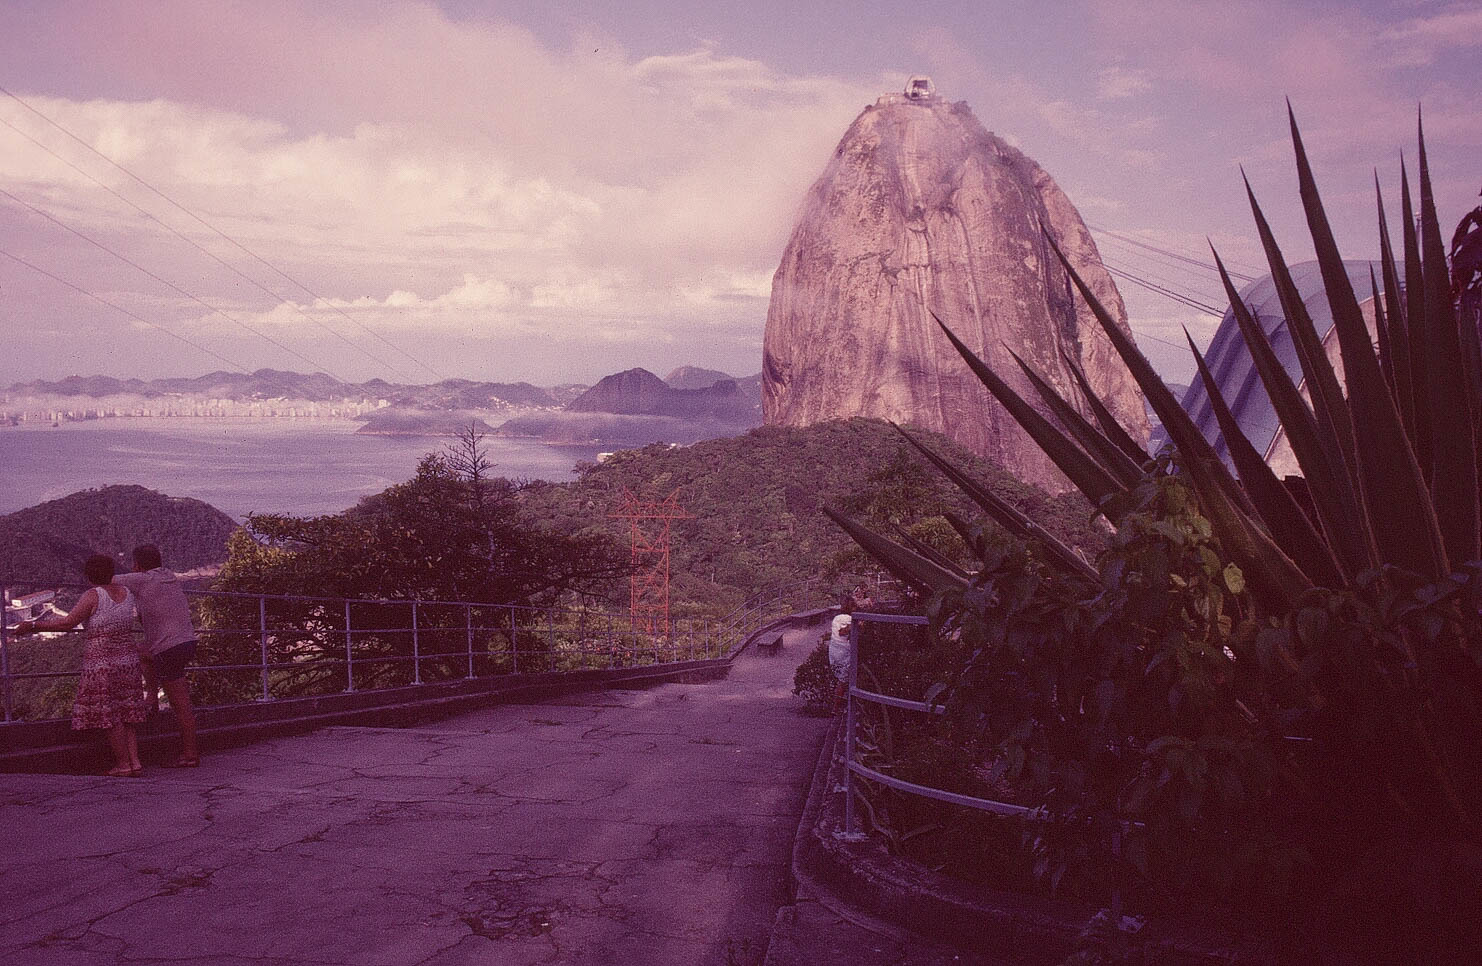 ZUCKERHUT IN RIO DE JANEIRO